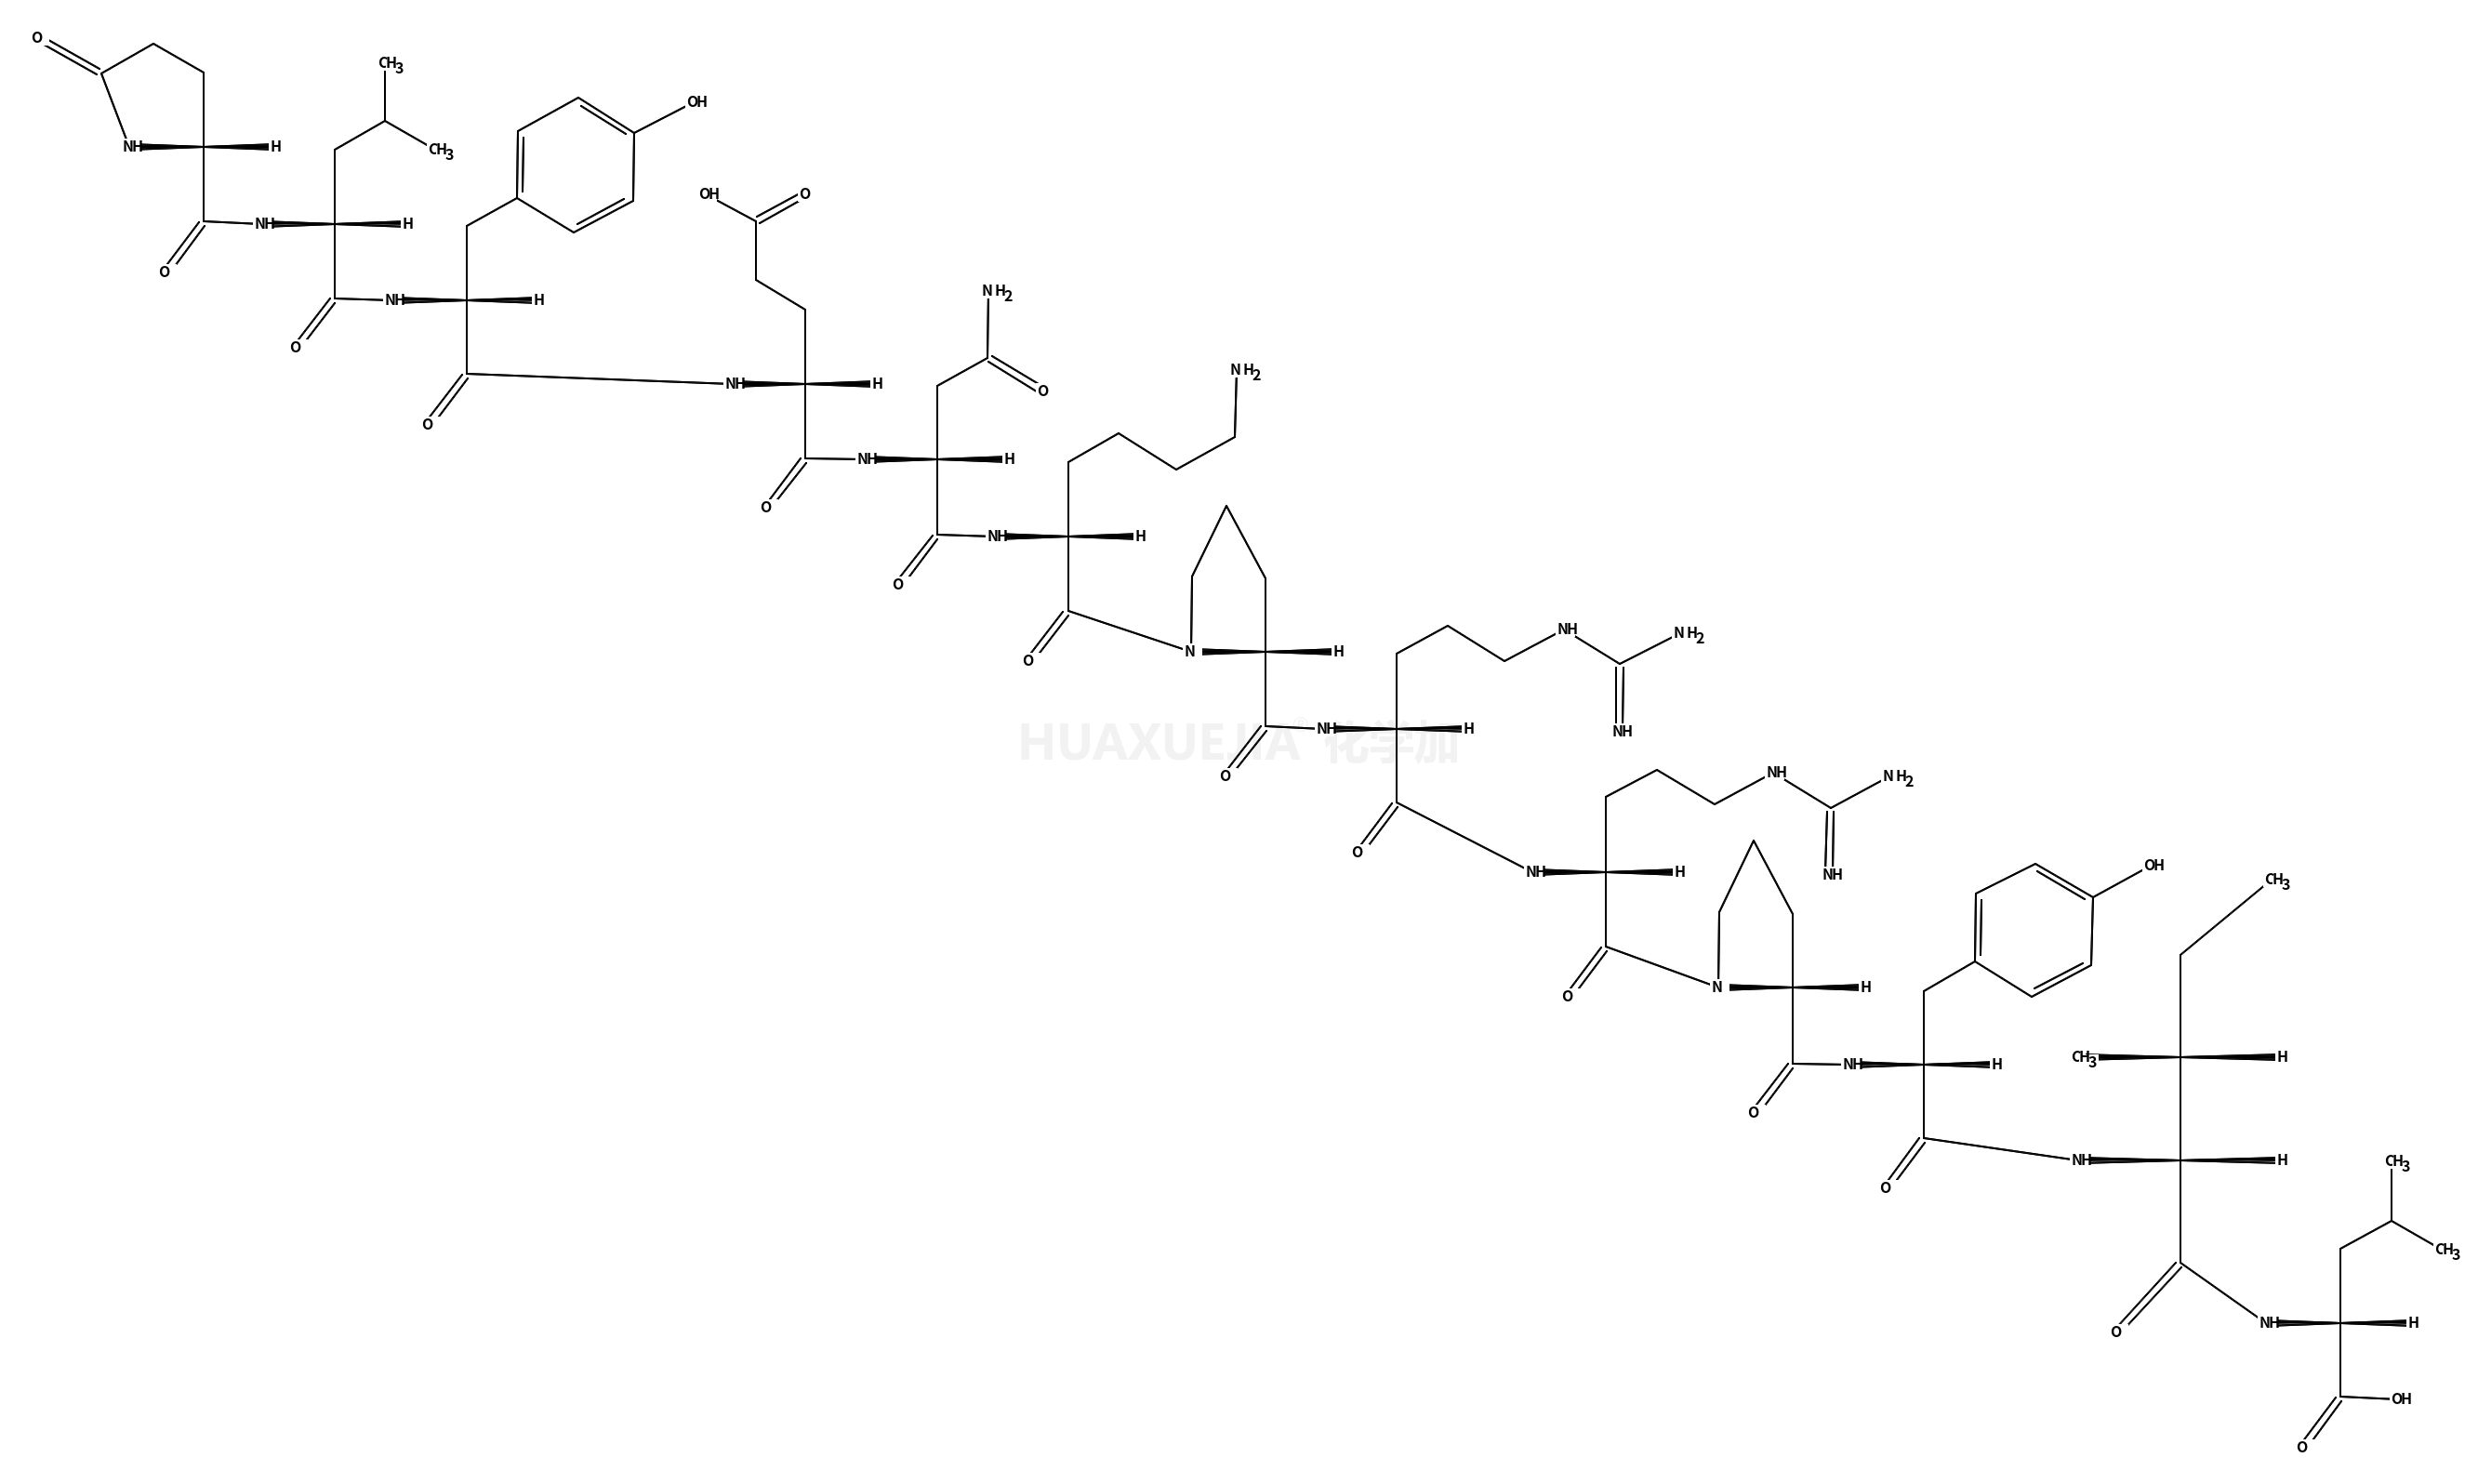 烟酰胺腺呤二核苷磷酸钠